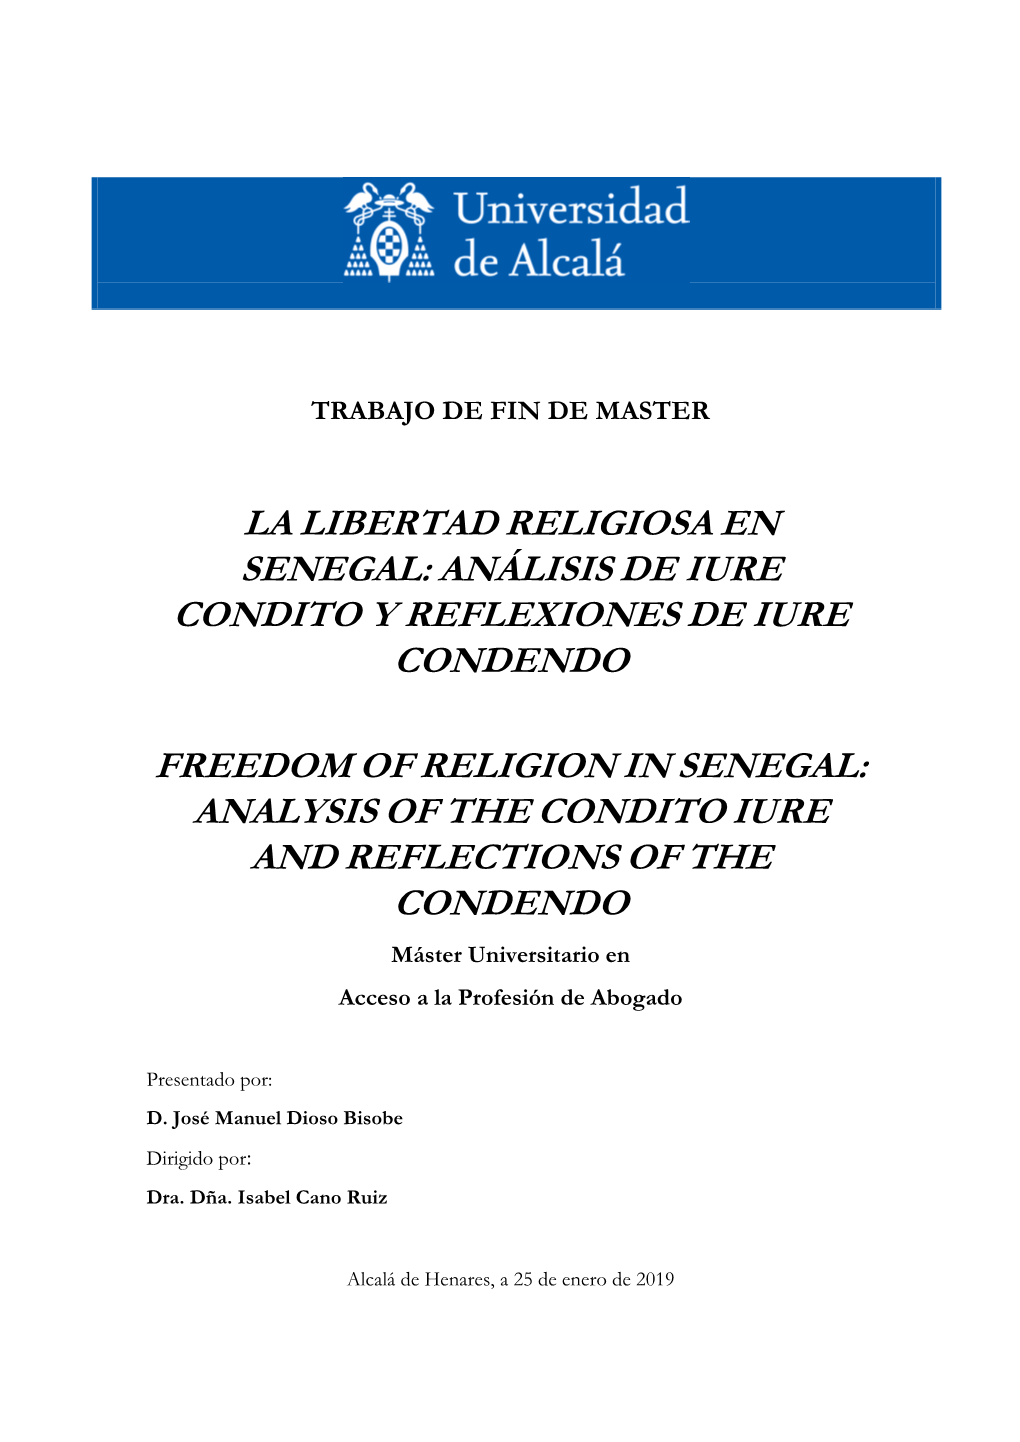 La Libertad Religiosa En Senegal: Análisis De Iure Condito Y Reflexiones De Iure Condendo